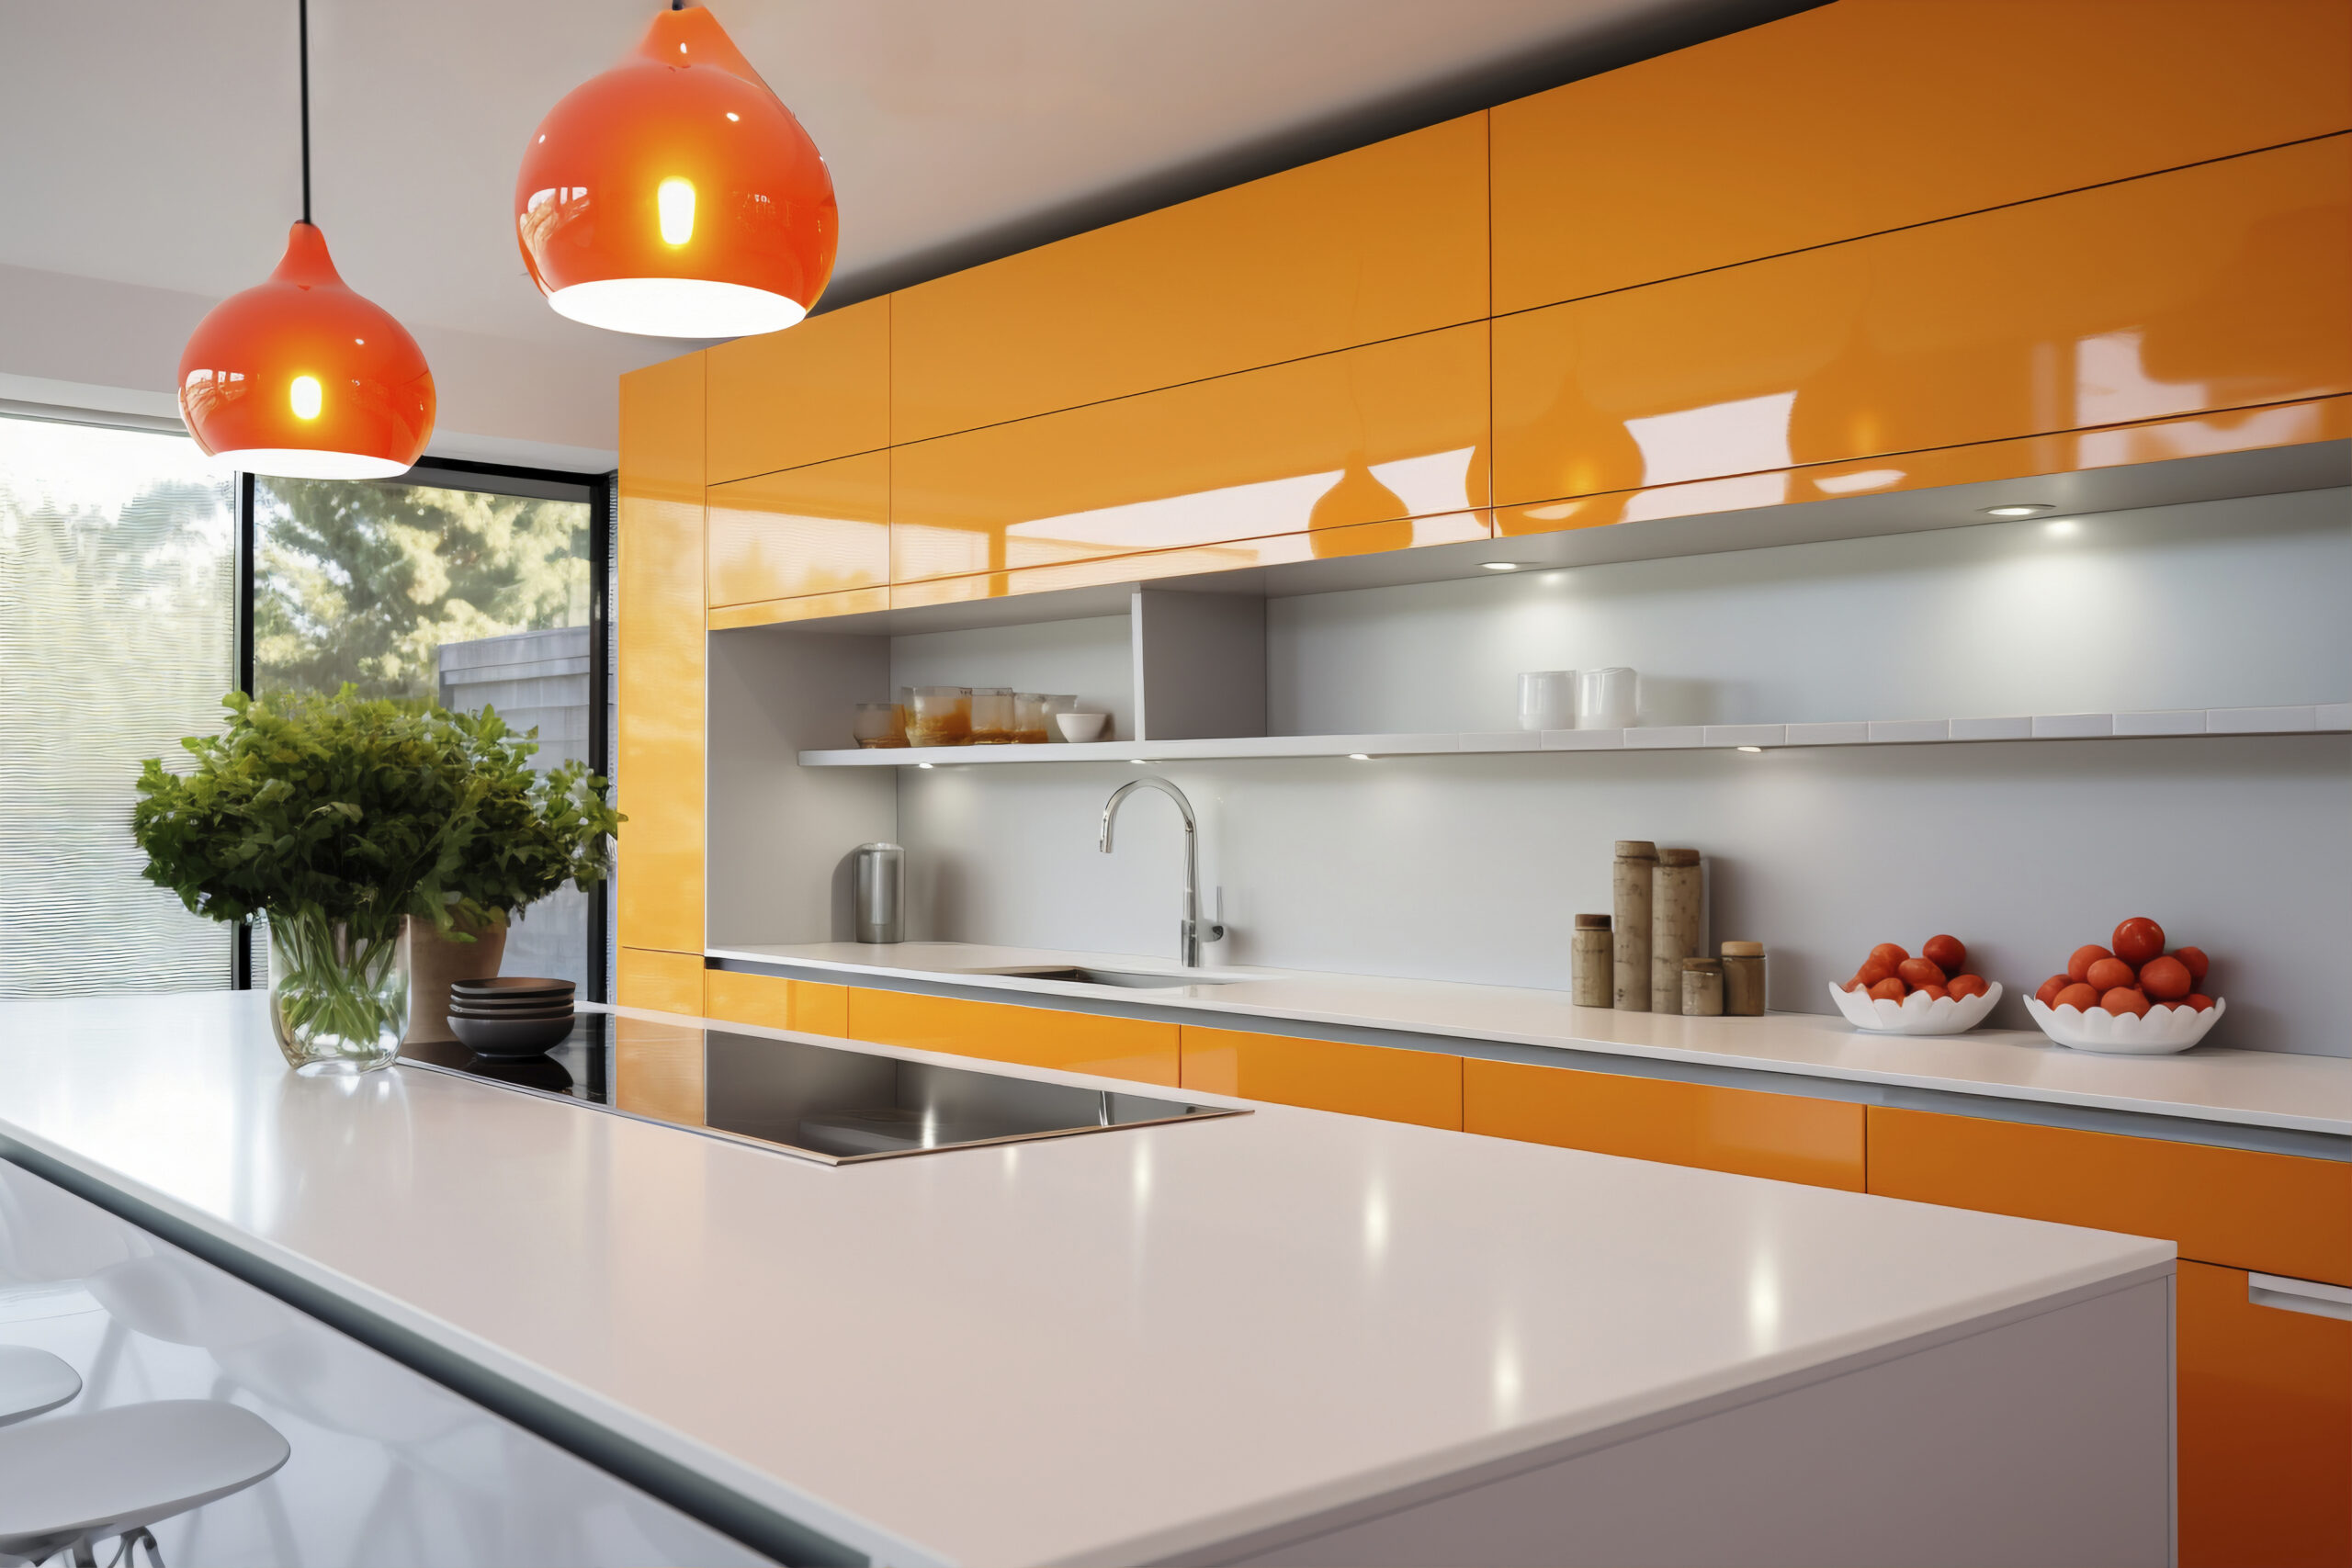 economical countertop choices, kitchen, interior, decor